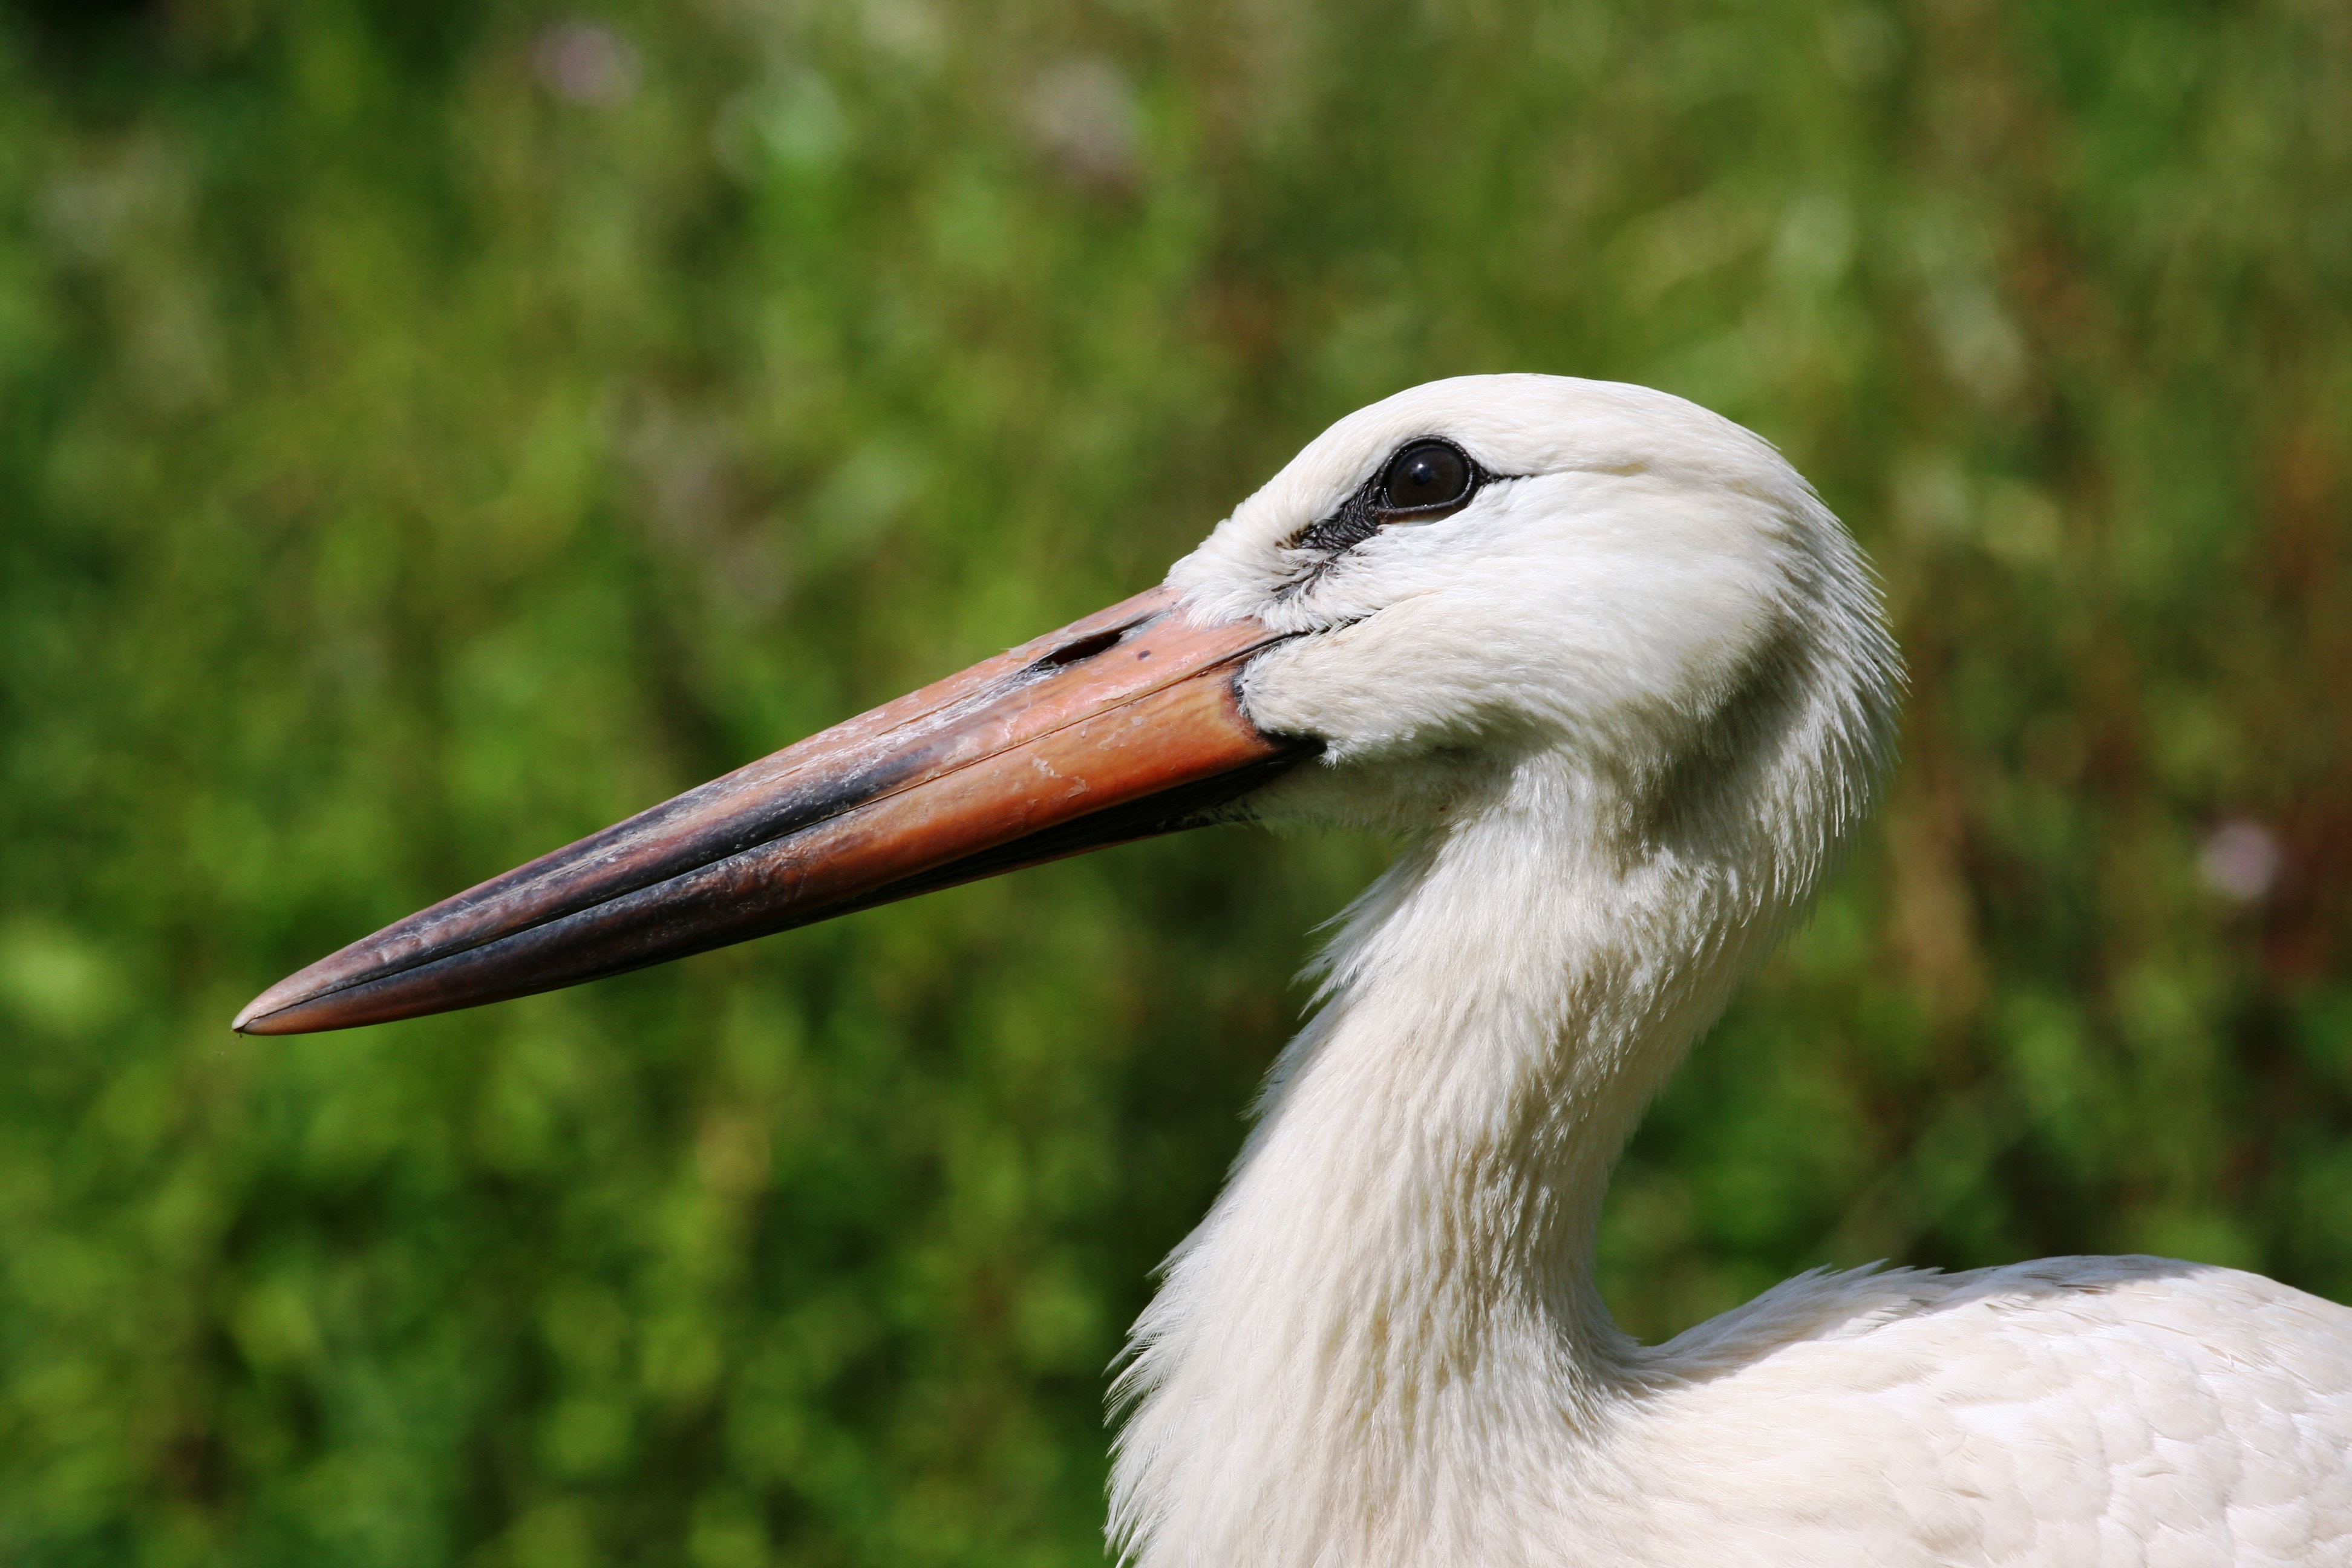 Stork Colony, France, Stork, Nature, one animal, beak